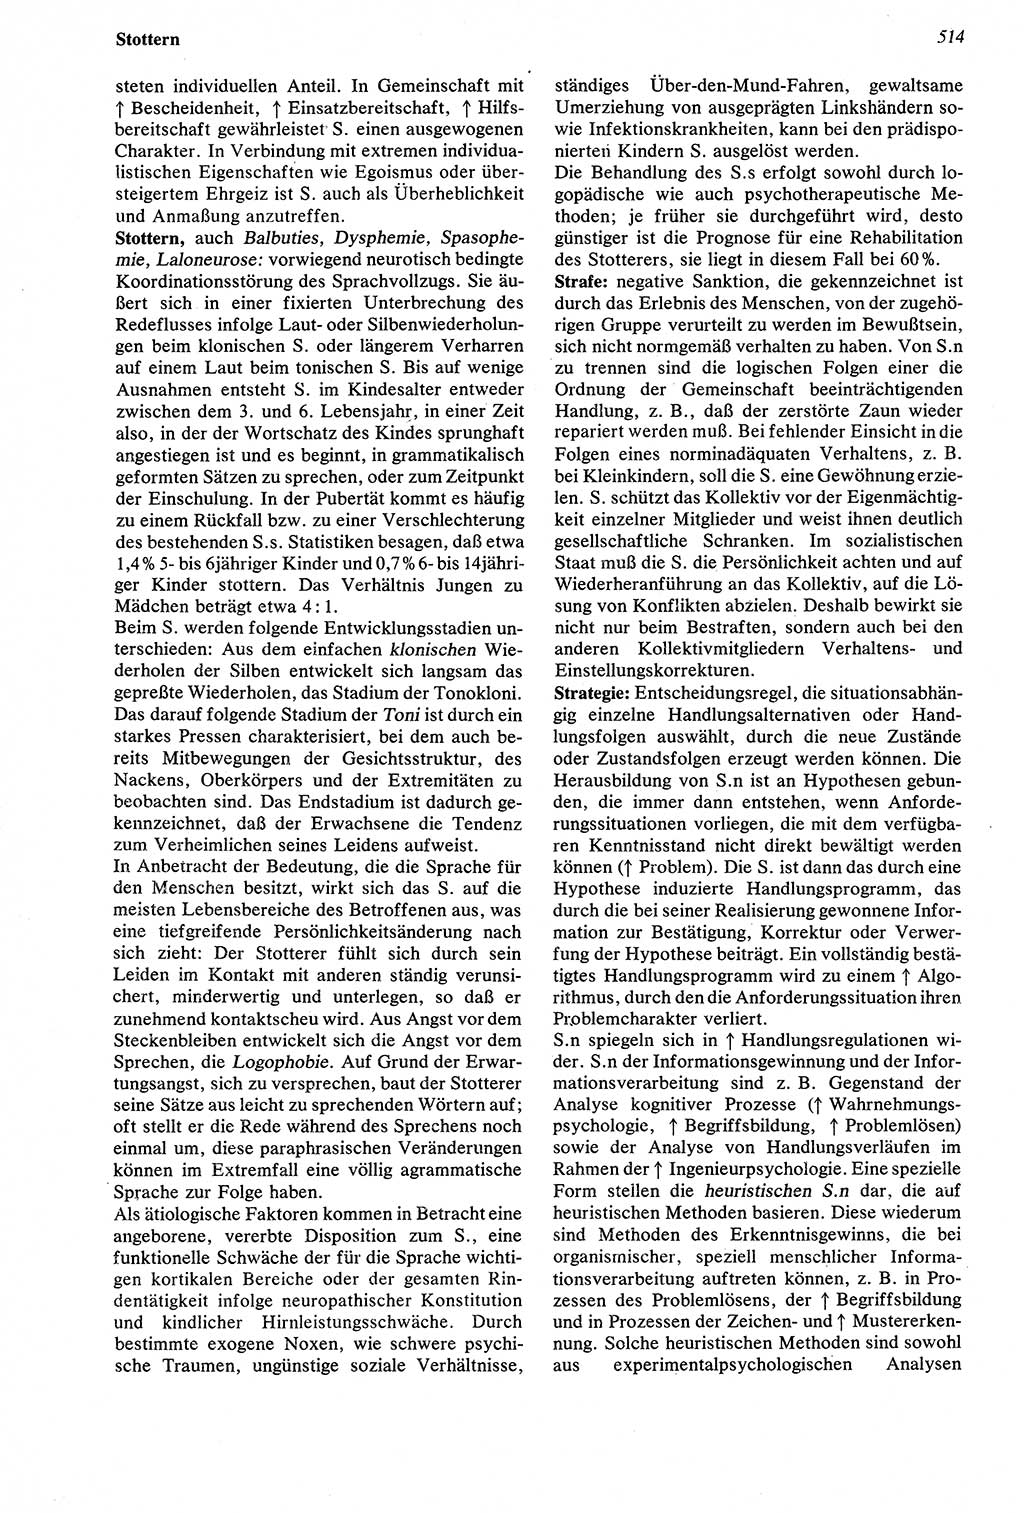 Wörterbuch der Psychologie [Deutsche Demokratische Republik (DDR)] 1976, Seite 514 (Wb. Psych. DDR 1976, S. 514)